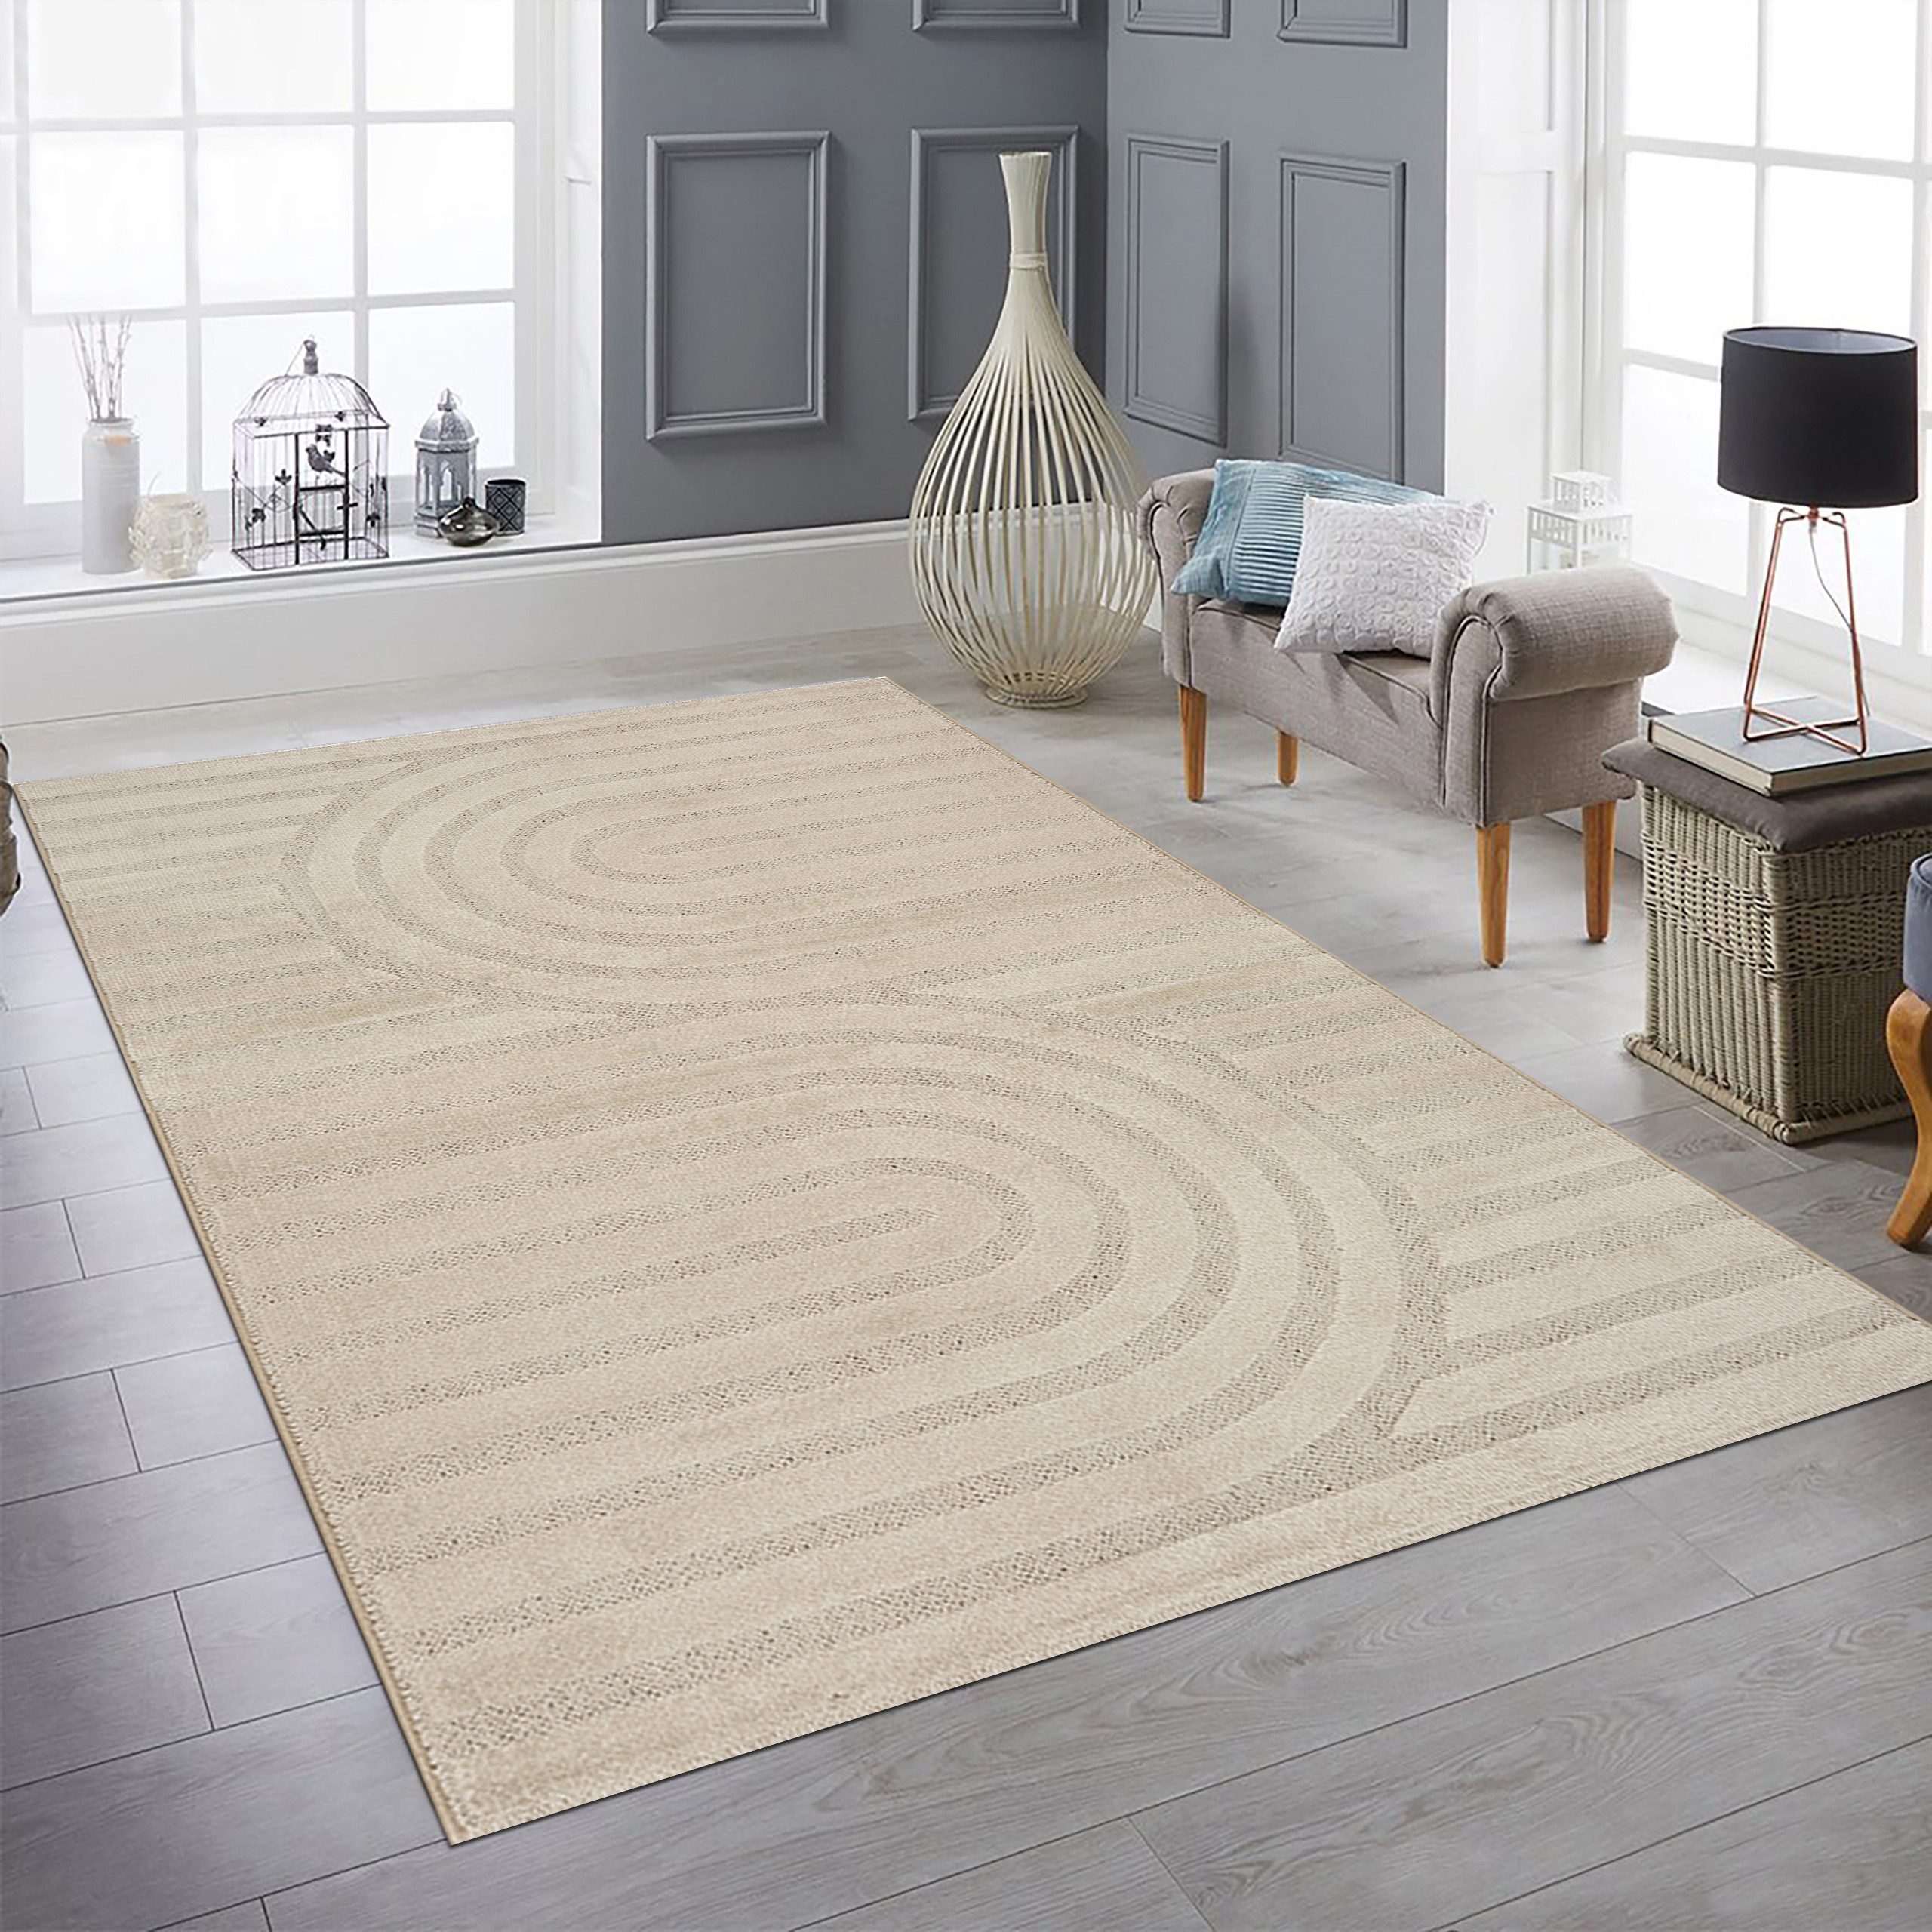 Teppich Wohnzimmerteppich Glanz strapazierfähig modern mit Muster in Beige, Teppich-Traum, rechteckig